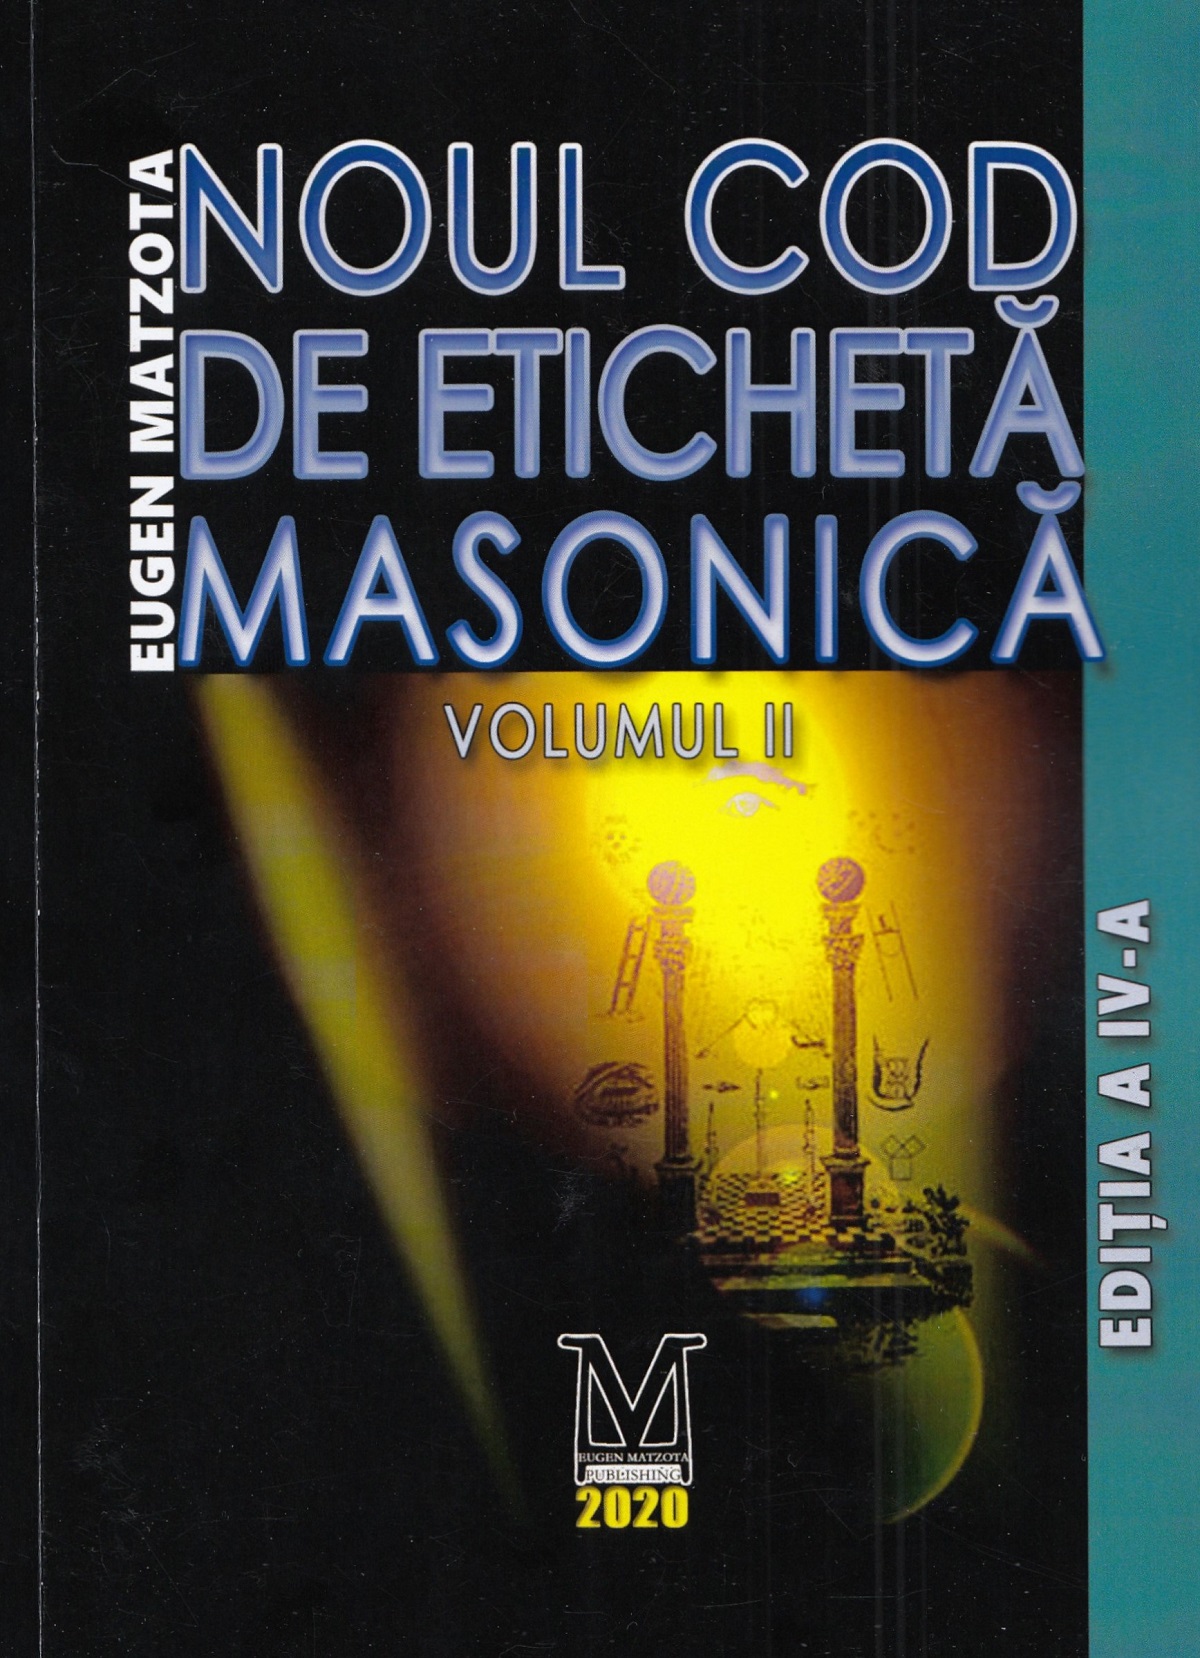 Noul cod de eticheta masonica Vol.1+2 - Eugen Matzota